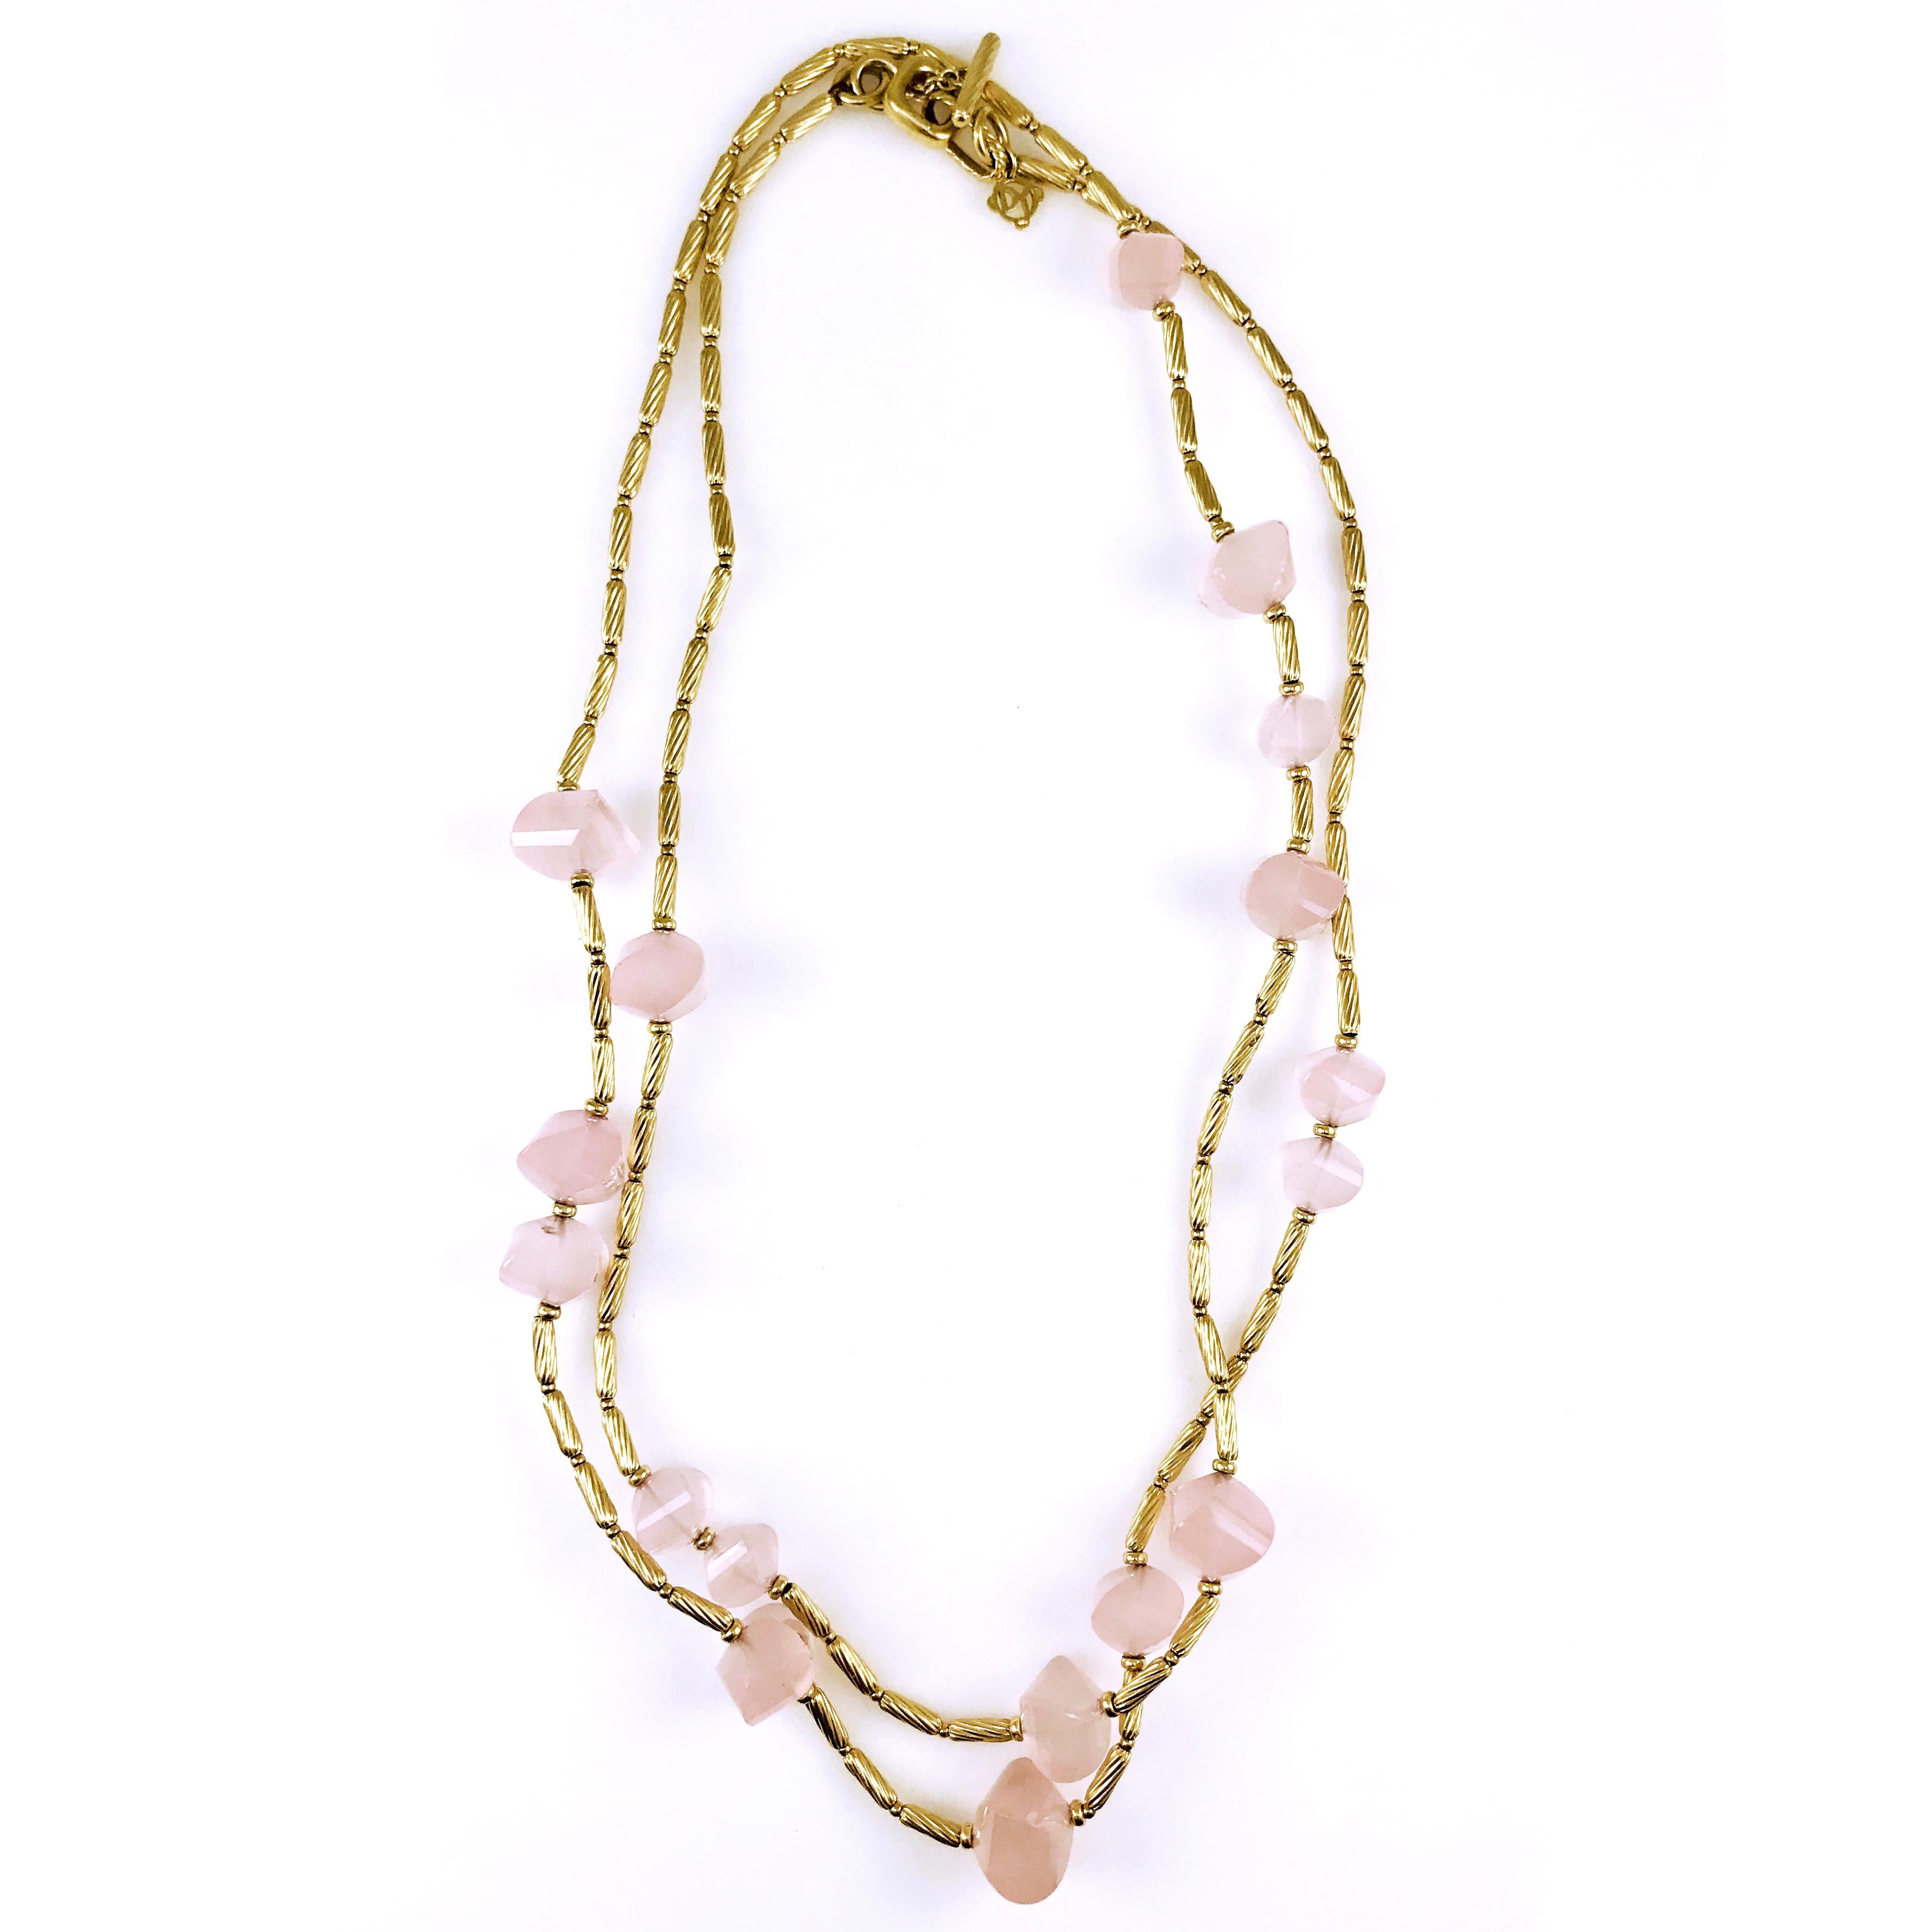 Collier David Yurman en or jaune 18 carats et quartz rose. Ce collier de créateur comporte un câble tubulaire torsadé, des perles rondes et des perles de quartz rose. La longueur du collier est de 44'' et il a un fermoir à bascule. Les perles de